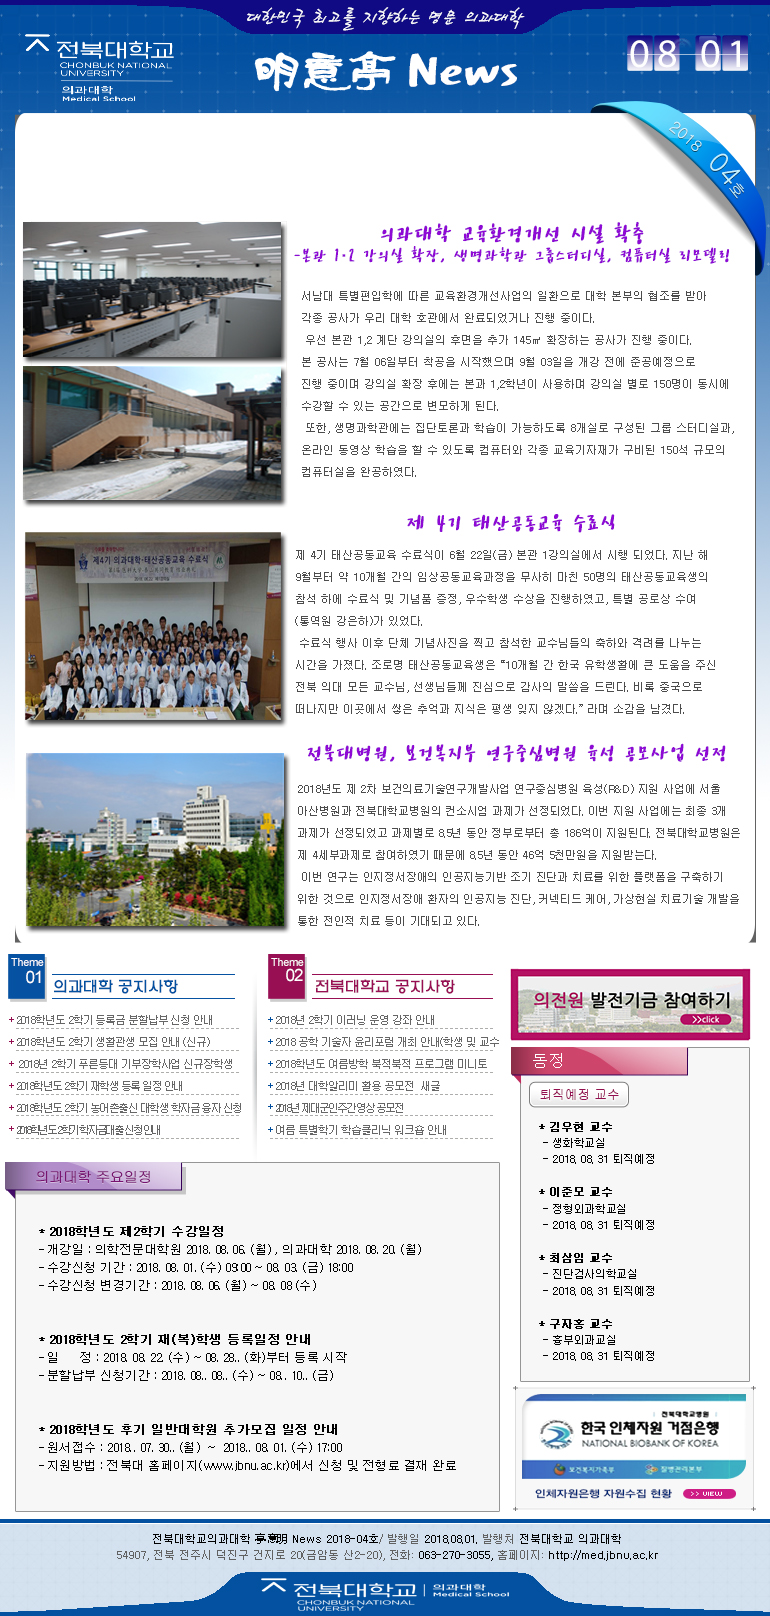 전북대학교 의과대학 明意亭 News 제4호 (2018년 8월 1일) 대표이미지